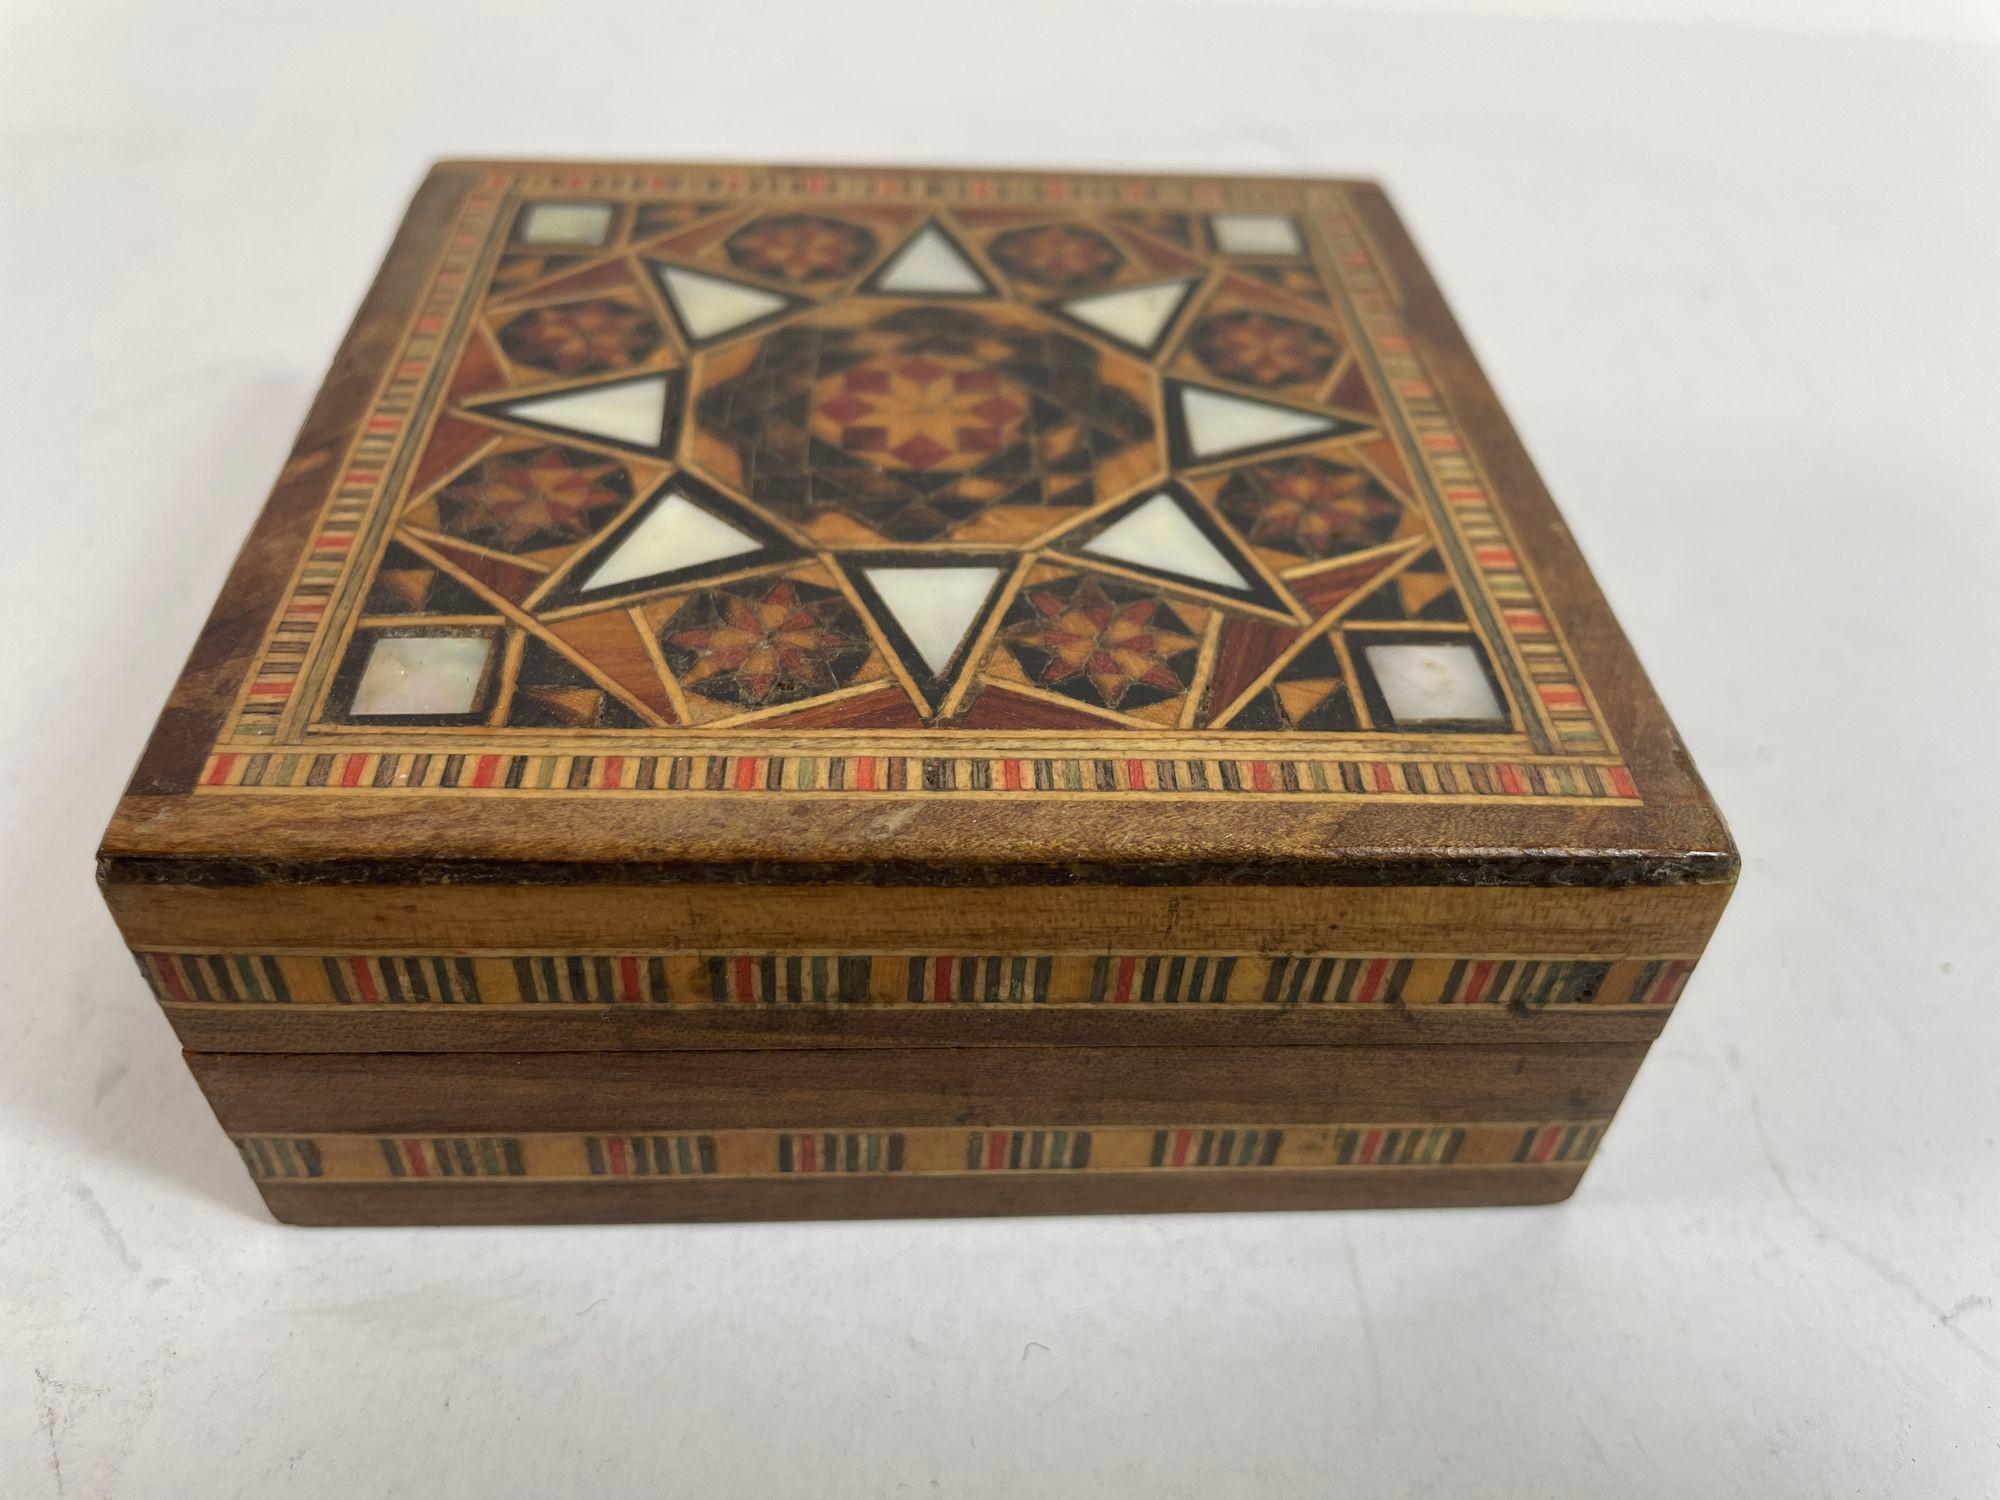 Vintage Middle Eastern Moorish Intarsien Mosaik Trinket Box.
Aufbewahrungsbox mit maurischen Intarsien aus dem Nahen Osten.
Die erstaunliche Handwerkskunst der Intarsienarbeit aus Obstholz mit maurischen geometrischen Mosaikmustern macht ihn zu